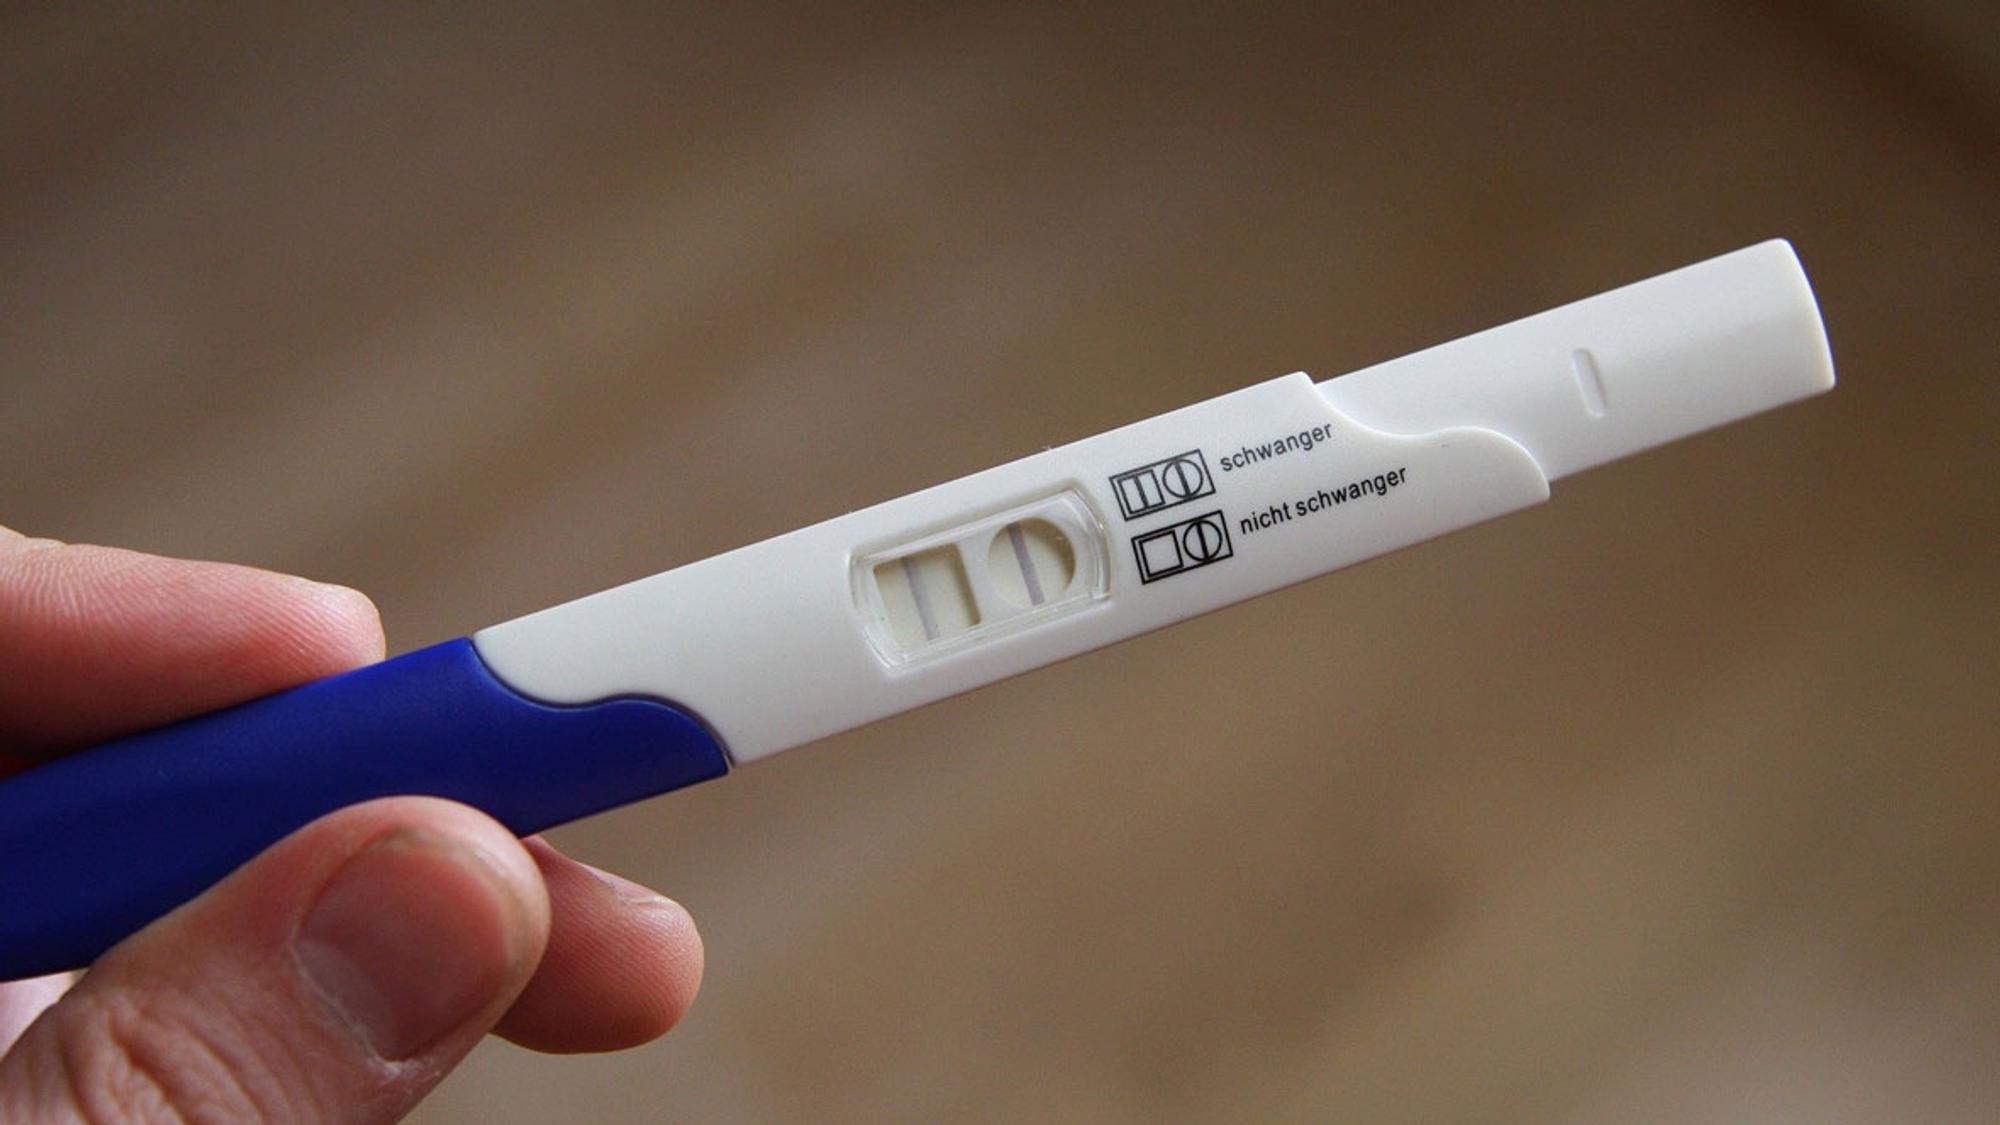 Nicht schwanger trotz positivem schwangerschaftstest